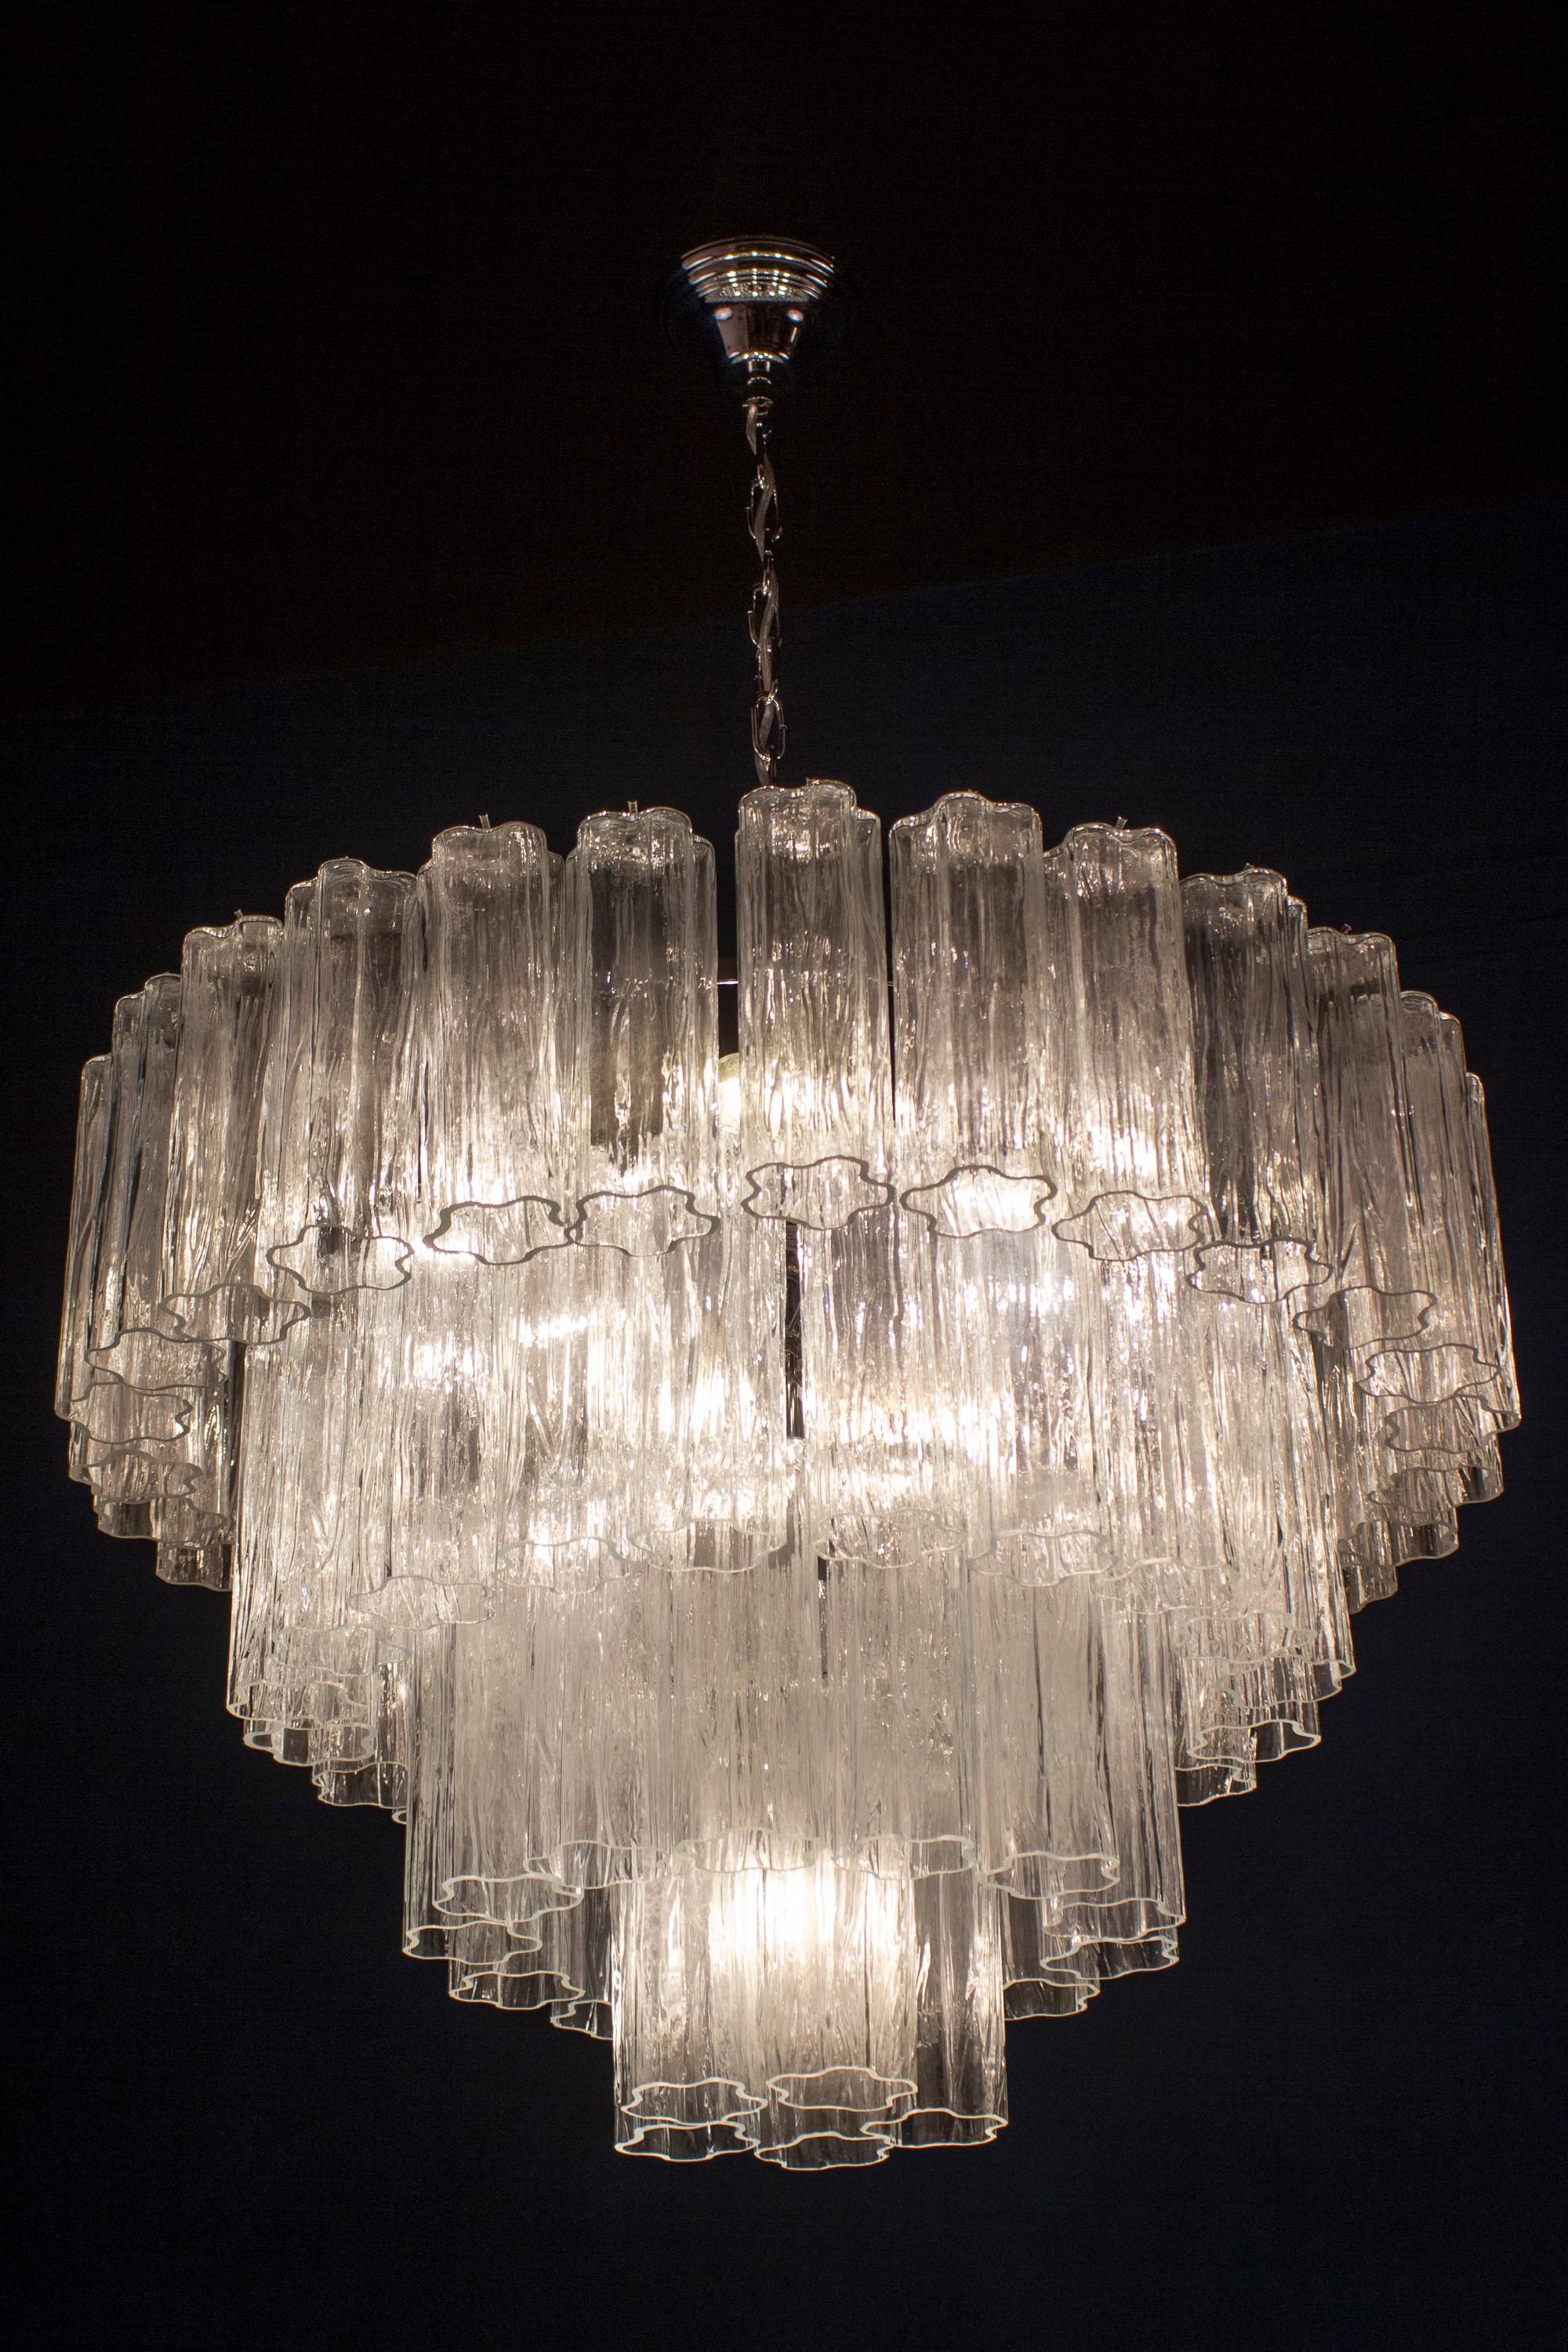 Superbe lustre avec 66 verres Murano transparents tronchi de 20 cm de long.
Structure métallique nickelée sur quatre niveaux.
 Huit ampoules E 27
 Le prix est celui de l'article.






